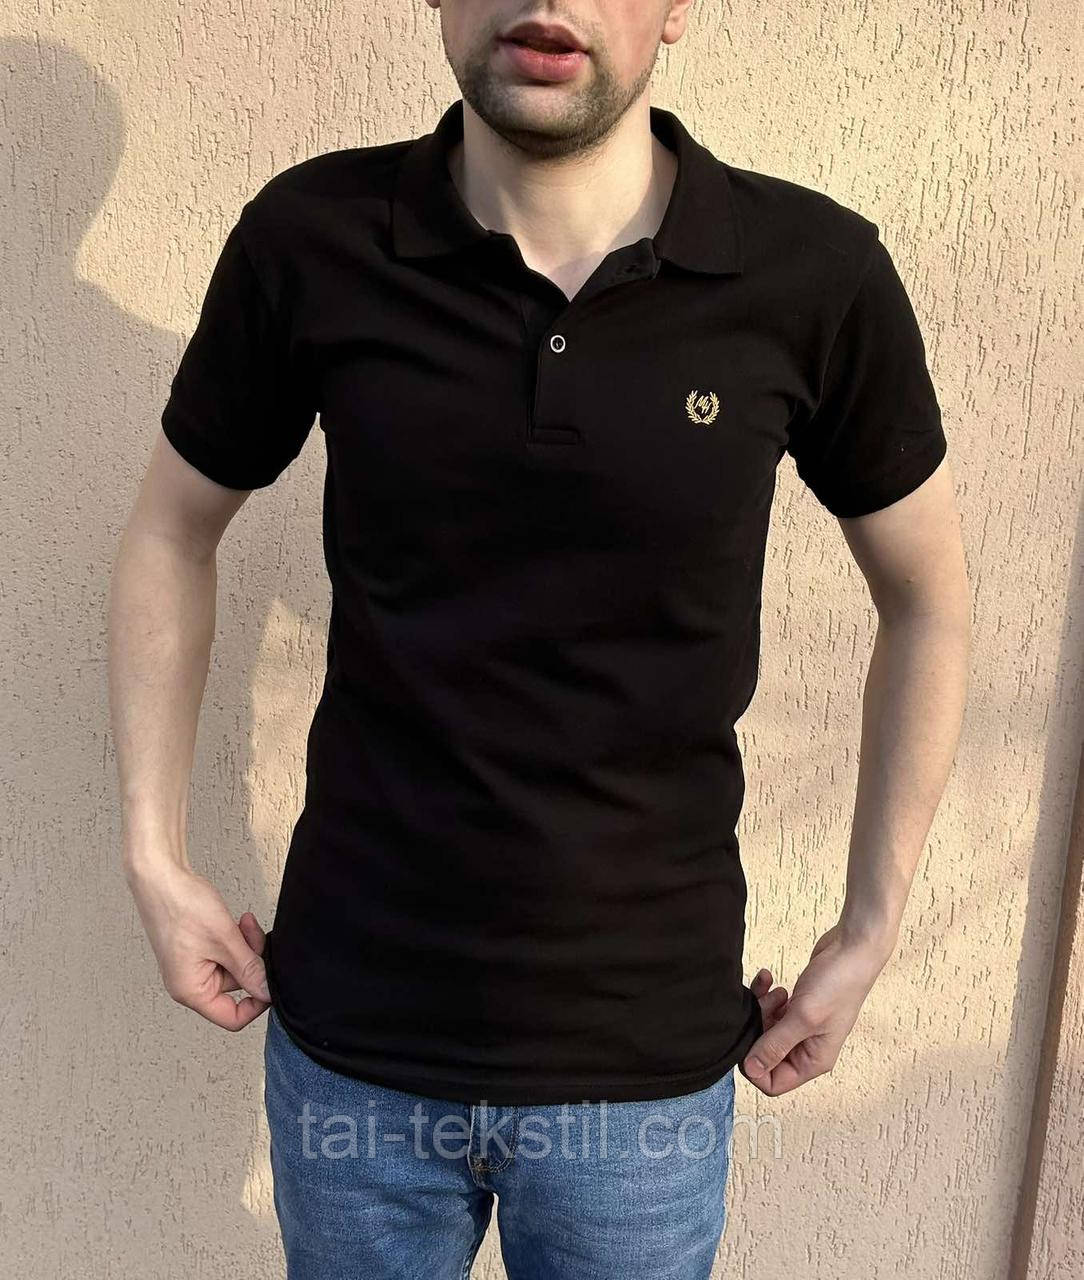 Чоловіча футболка - поло гарноі якості коттон 100% виробництво Туреччина